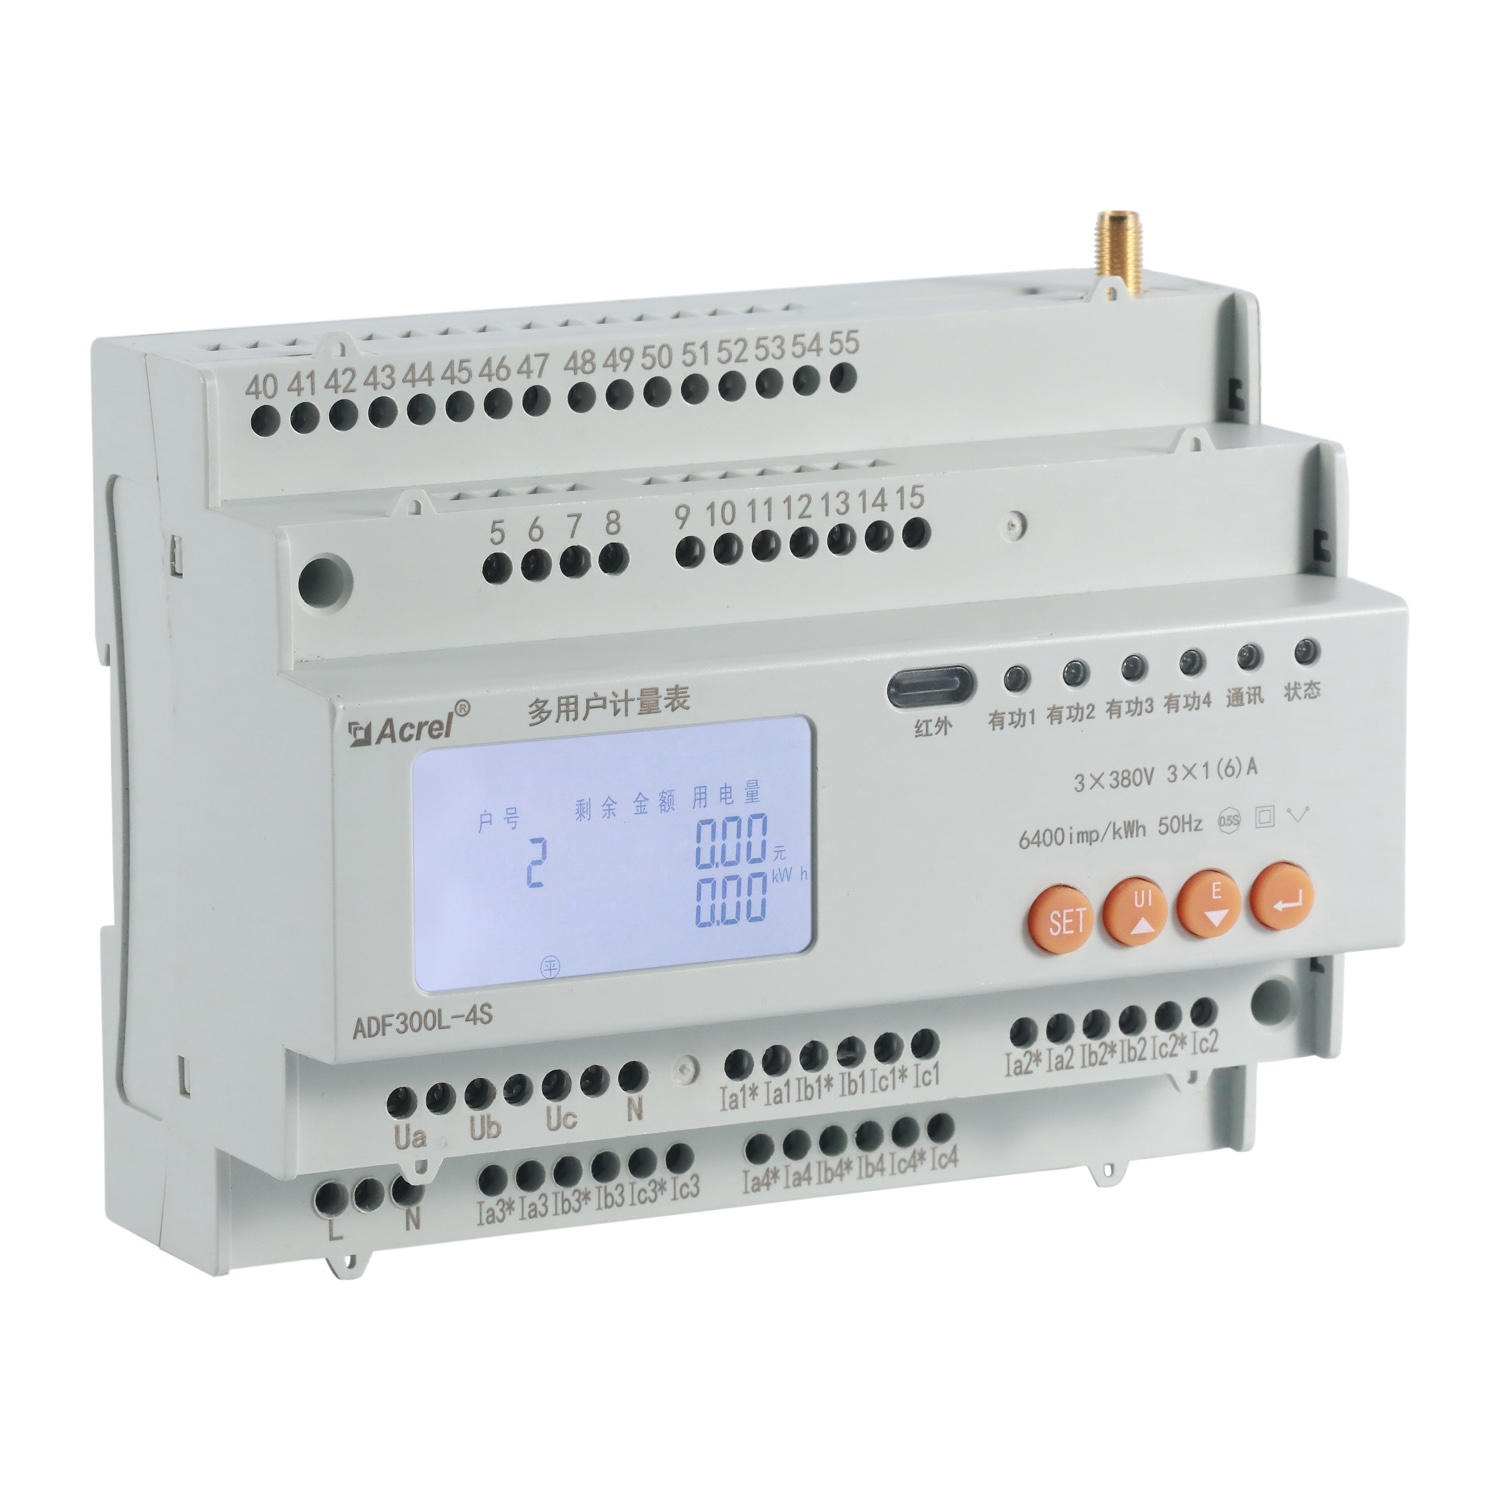 安科瑞 ADF300-II-15D(5S) 厂家直销 单三相回路混合用电多户计量表